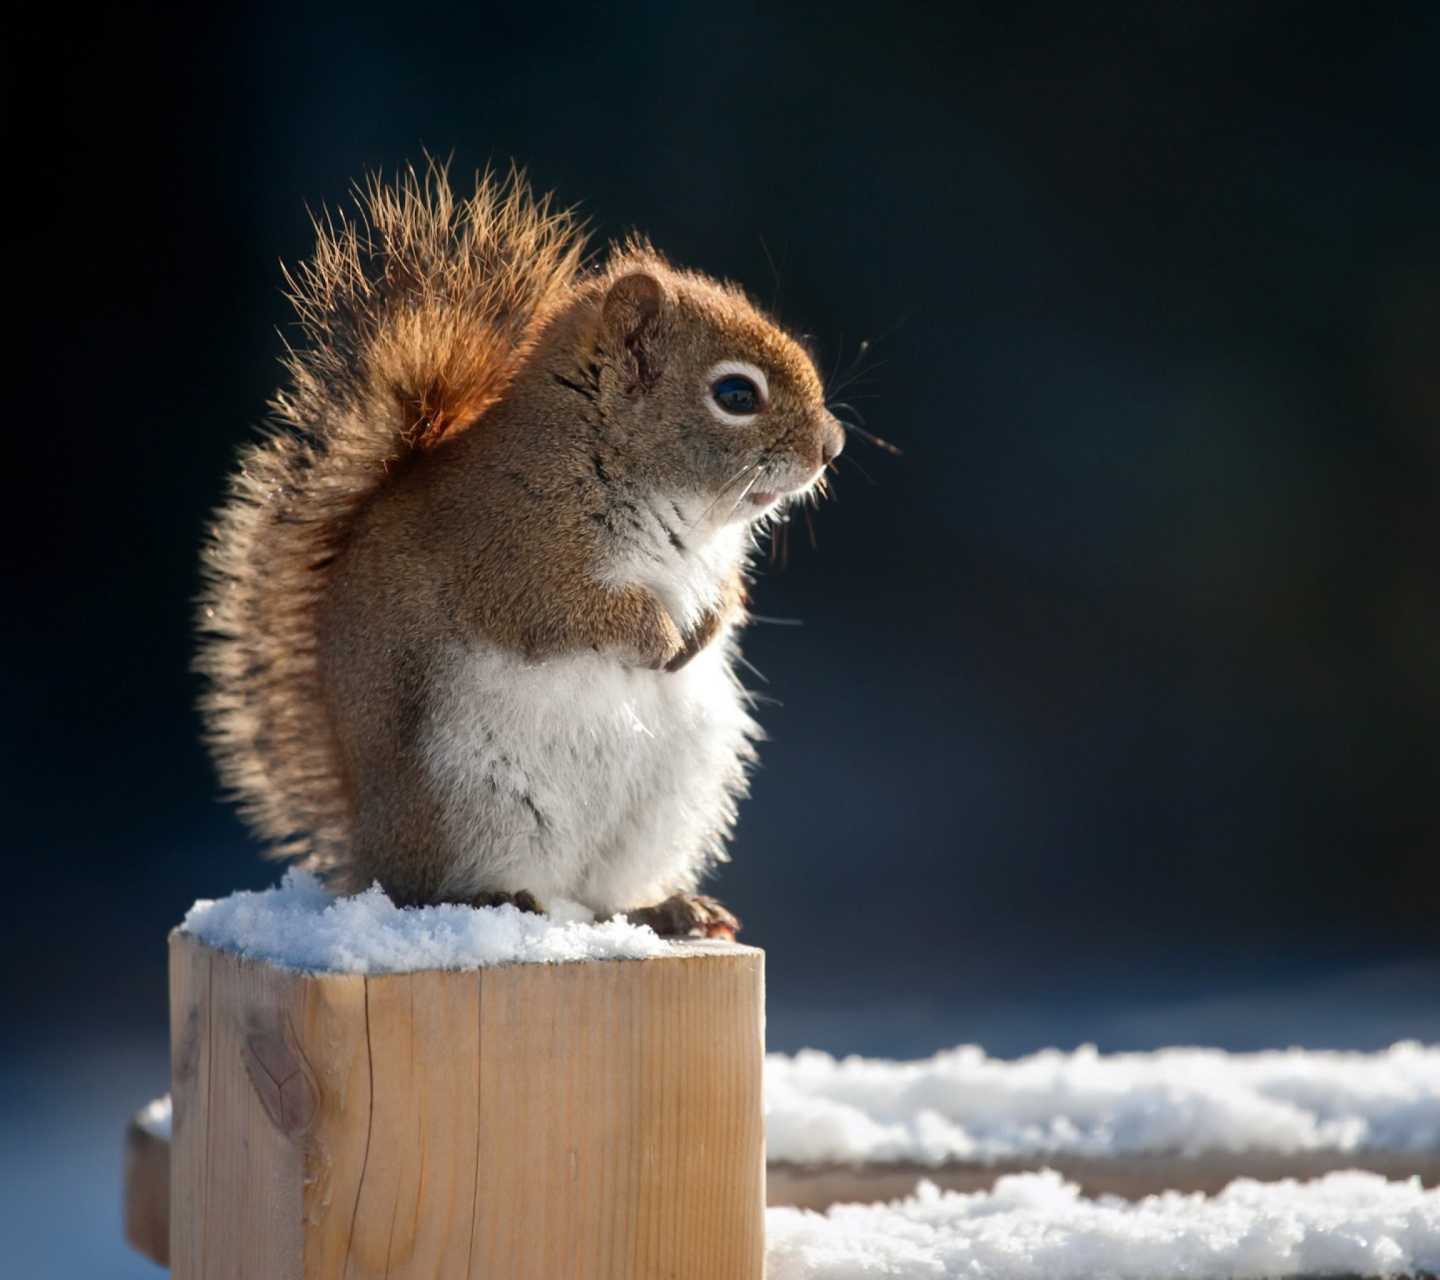 Cute squirrel in winter screenshot #1 1440x1280